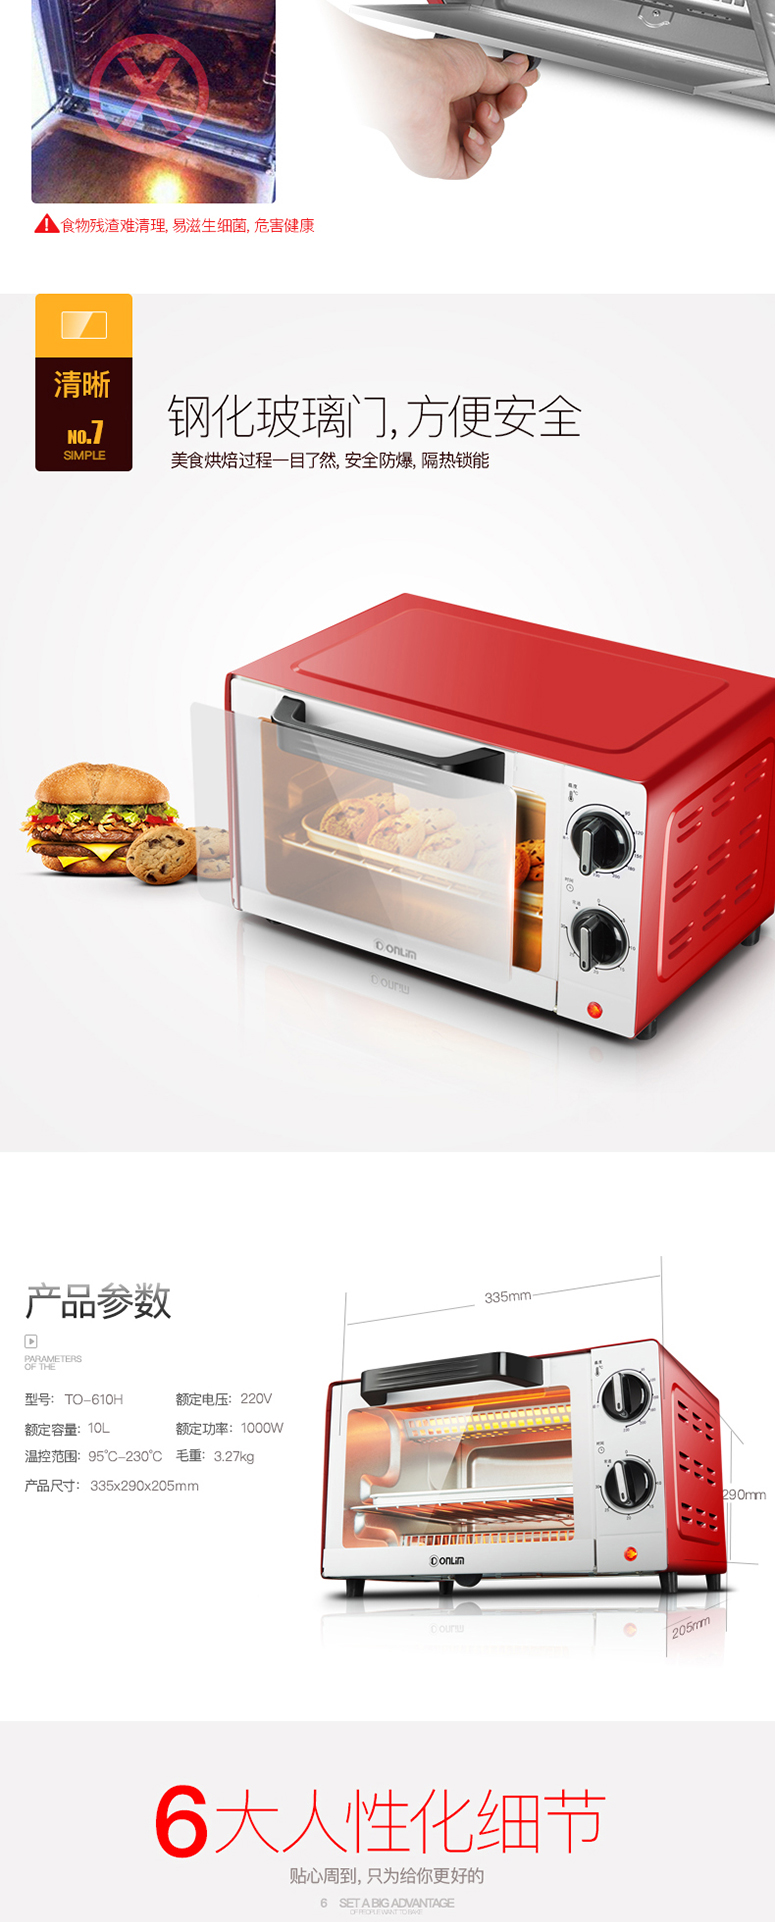 东菱电烤箱TO-610H宝贝描述_09.jpg